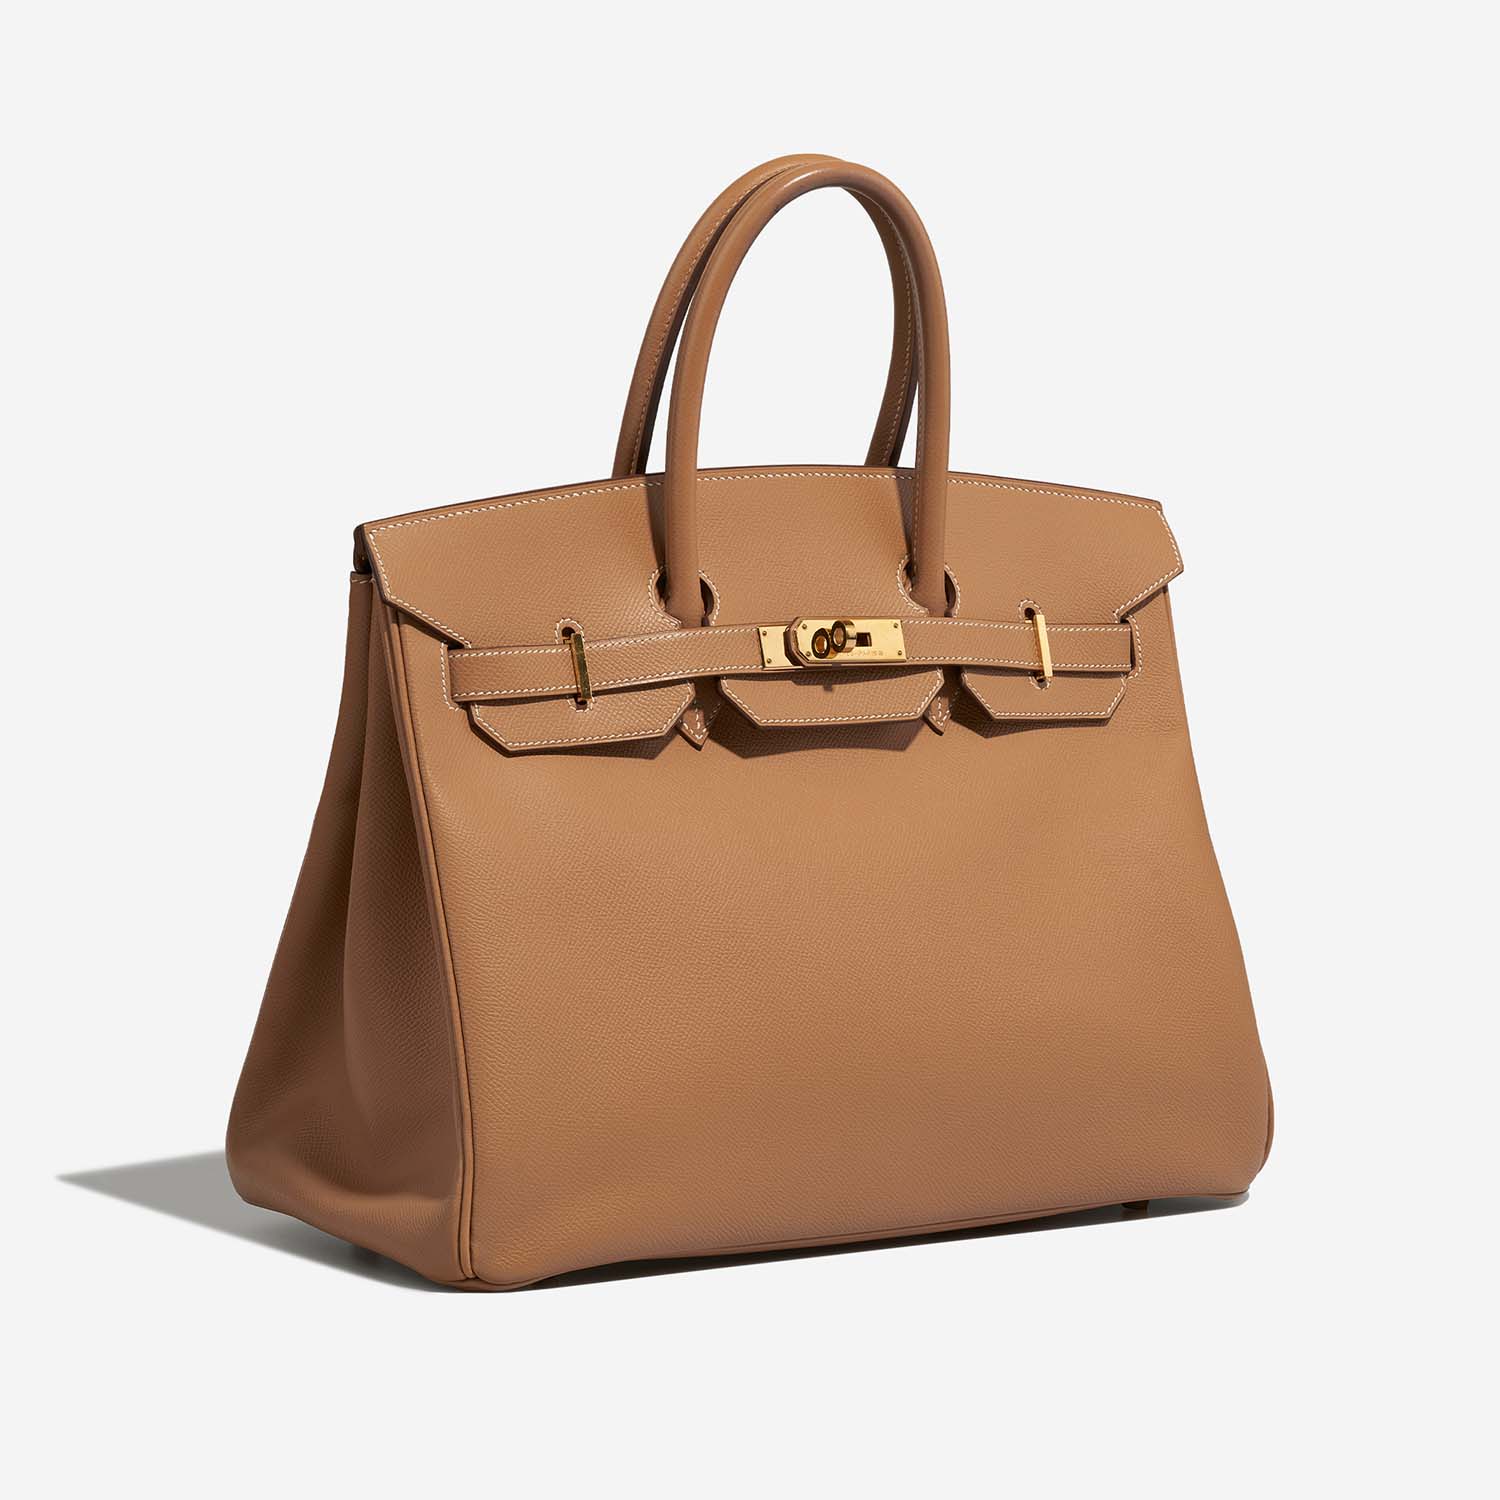 Hermès Birkin 35 Tabac-Camel Side Front | Verkaufen Sie Ihre Designer-Tasche auf Saclab.com